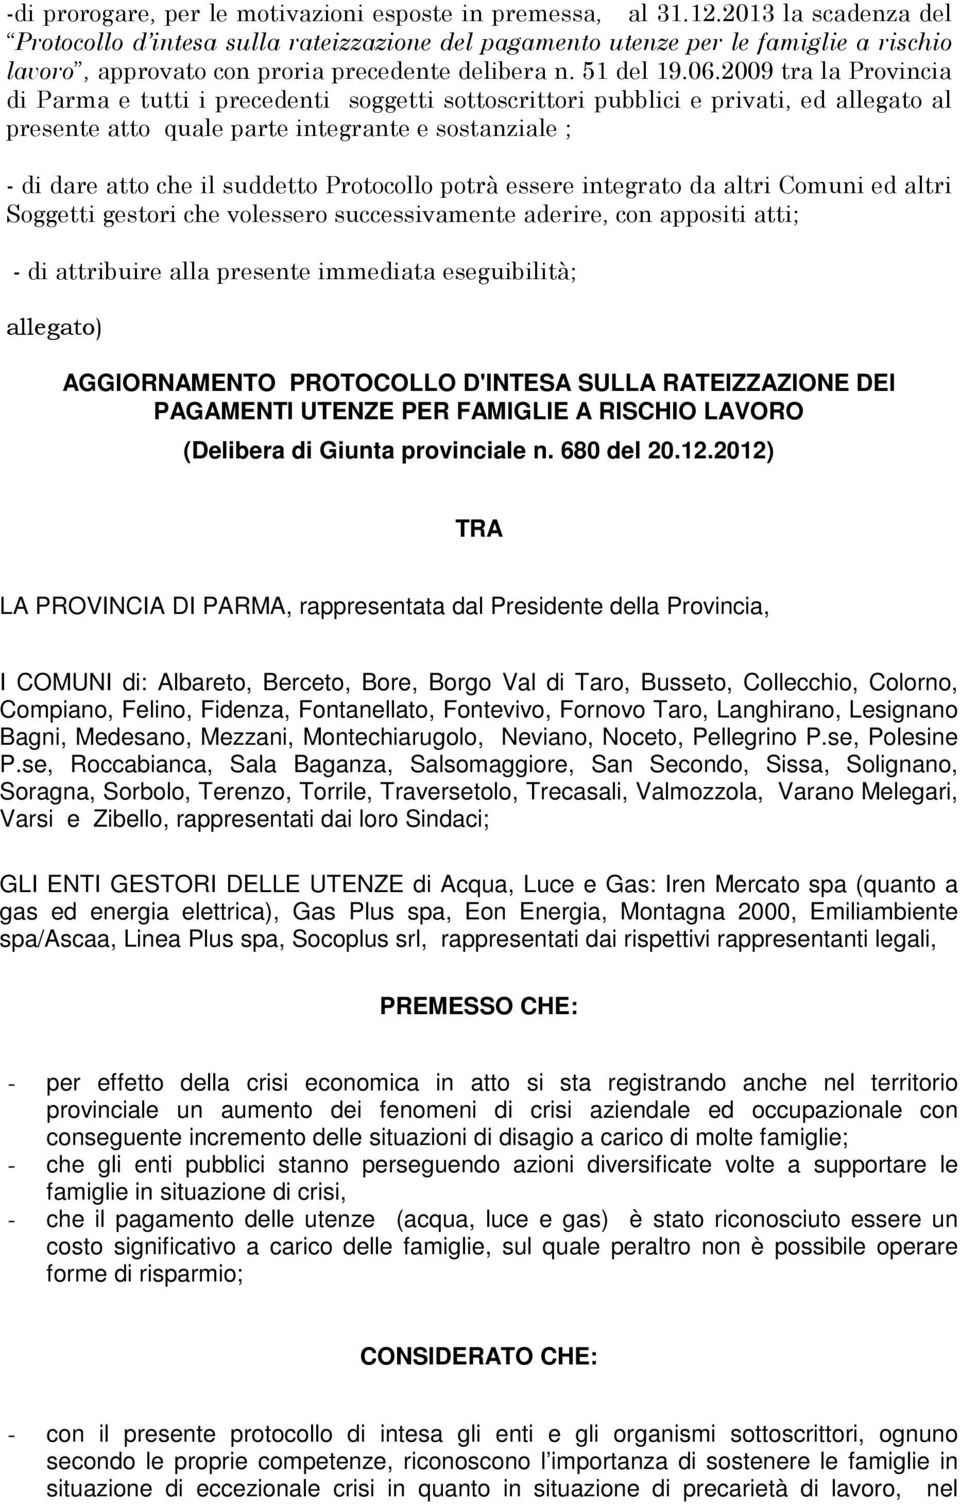 2009 tra la Provincia di Parma e tutti i precedenti soggetti sottoscrittori pubblici e privati, ed allegato al presente atto quale parte integrante e sostanziale ; - di dare atto che il suddetto